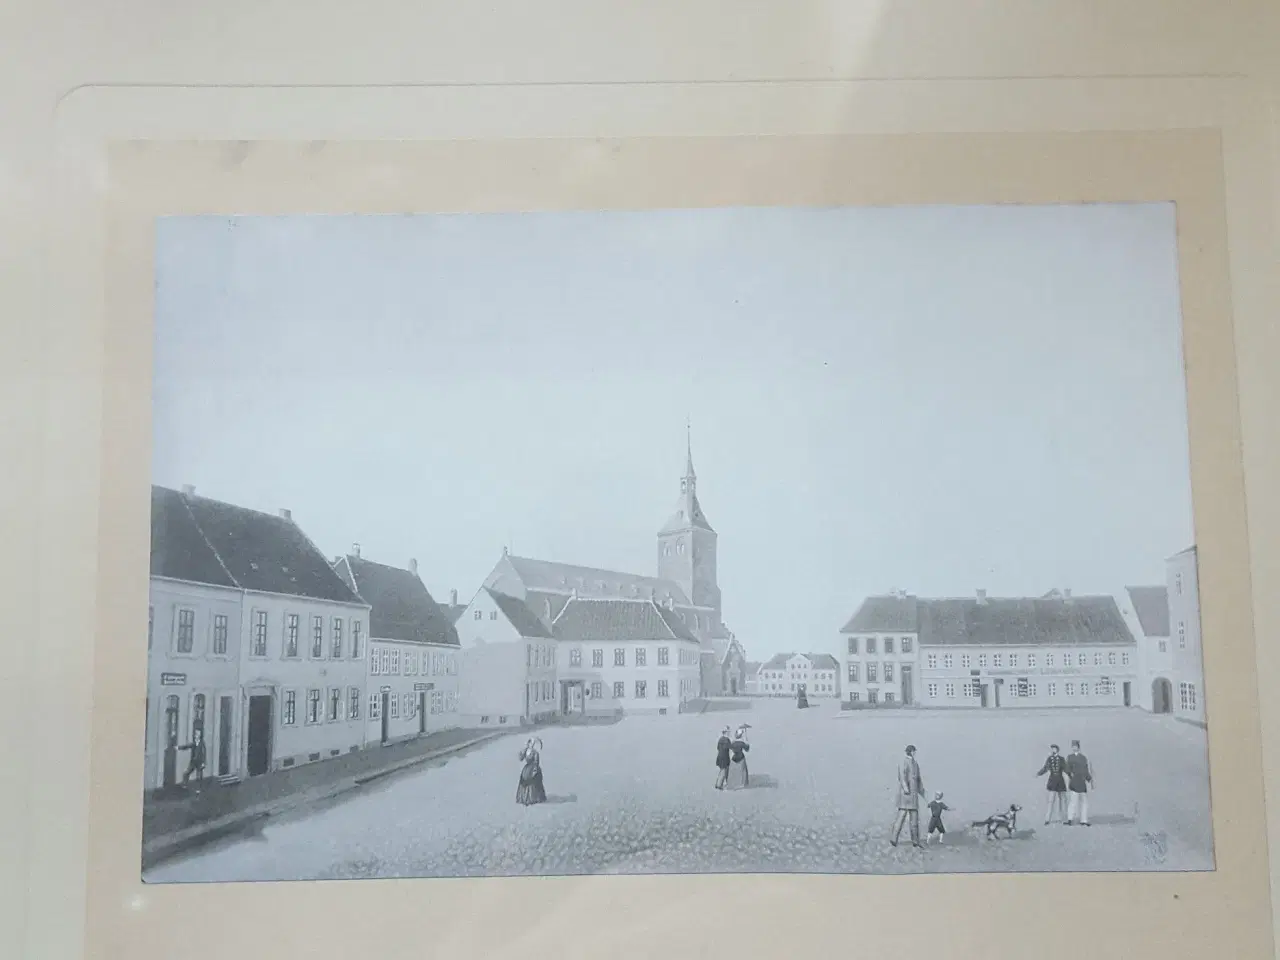 Billede 1 - 2 billeder fra det gamle Odense